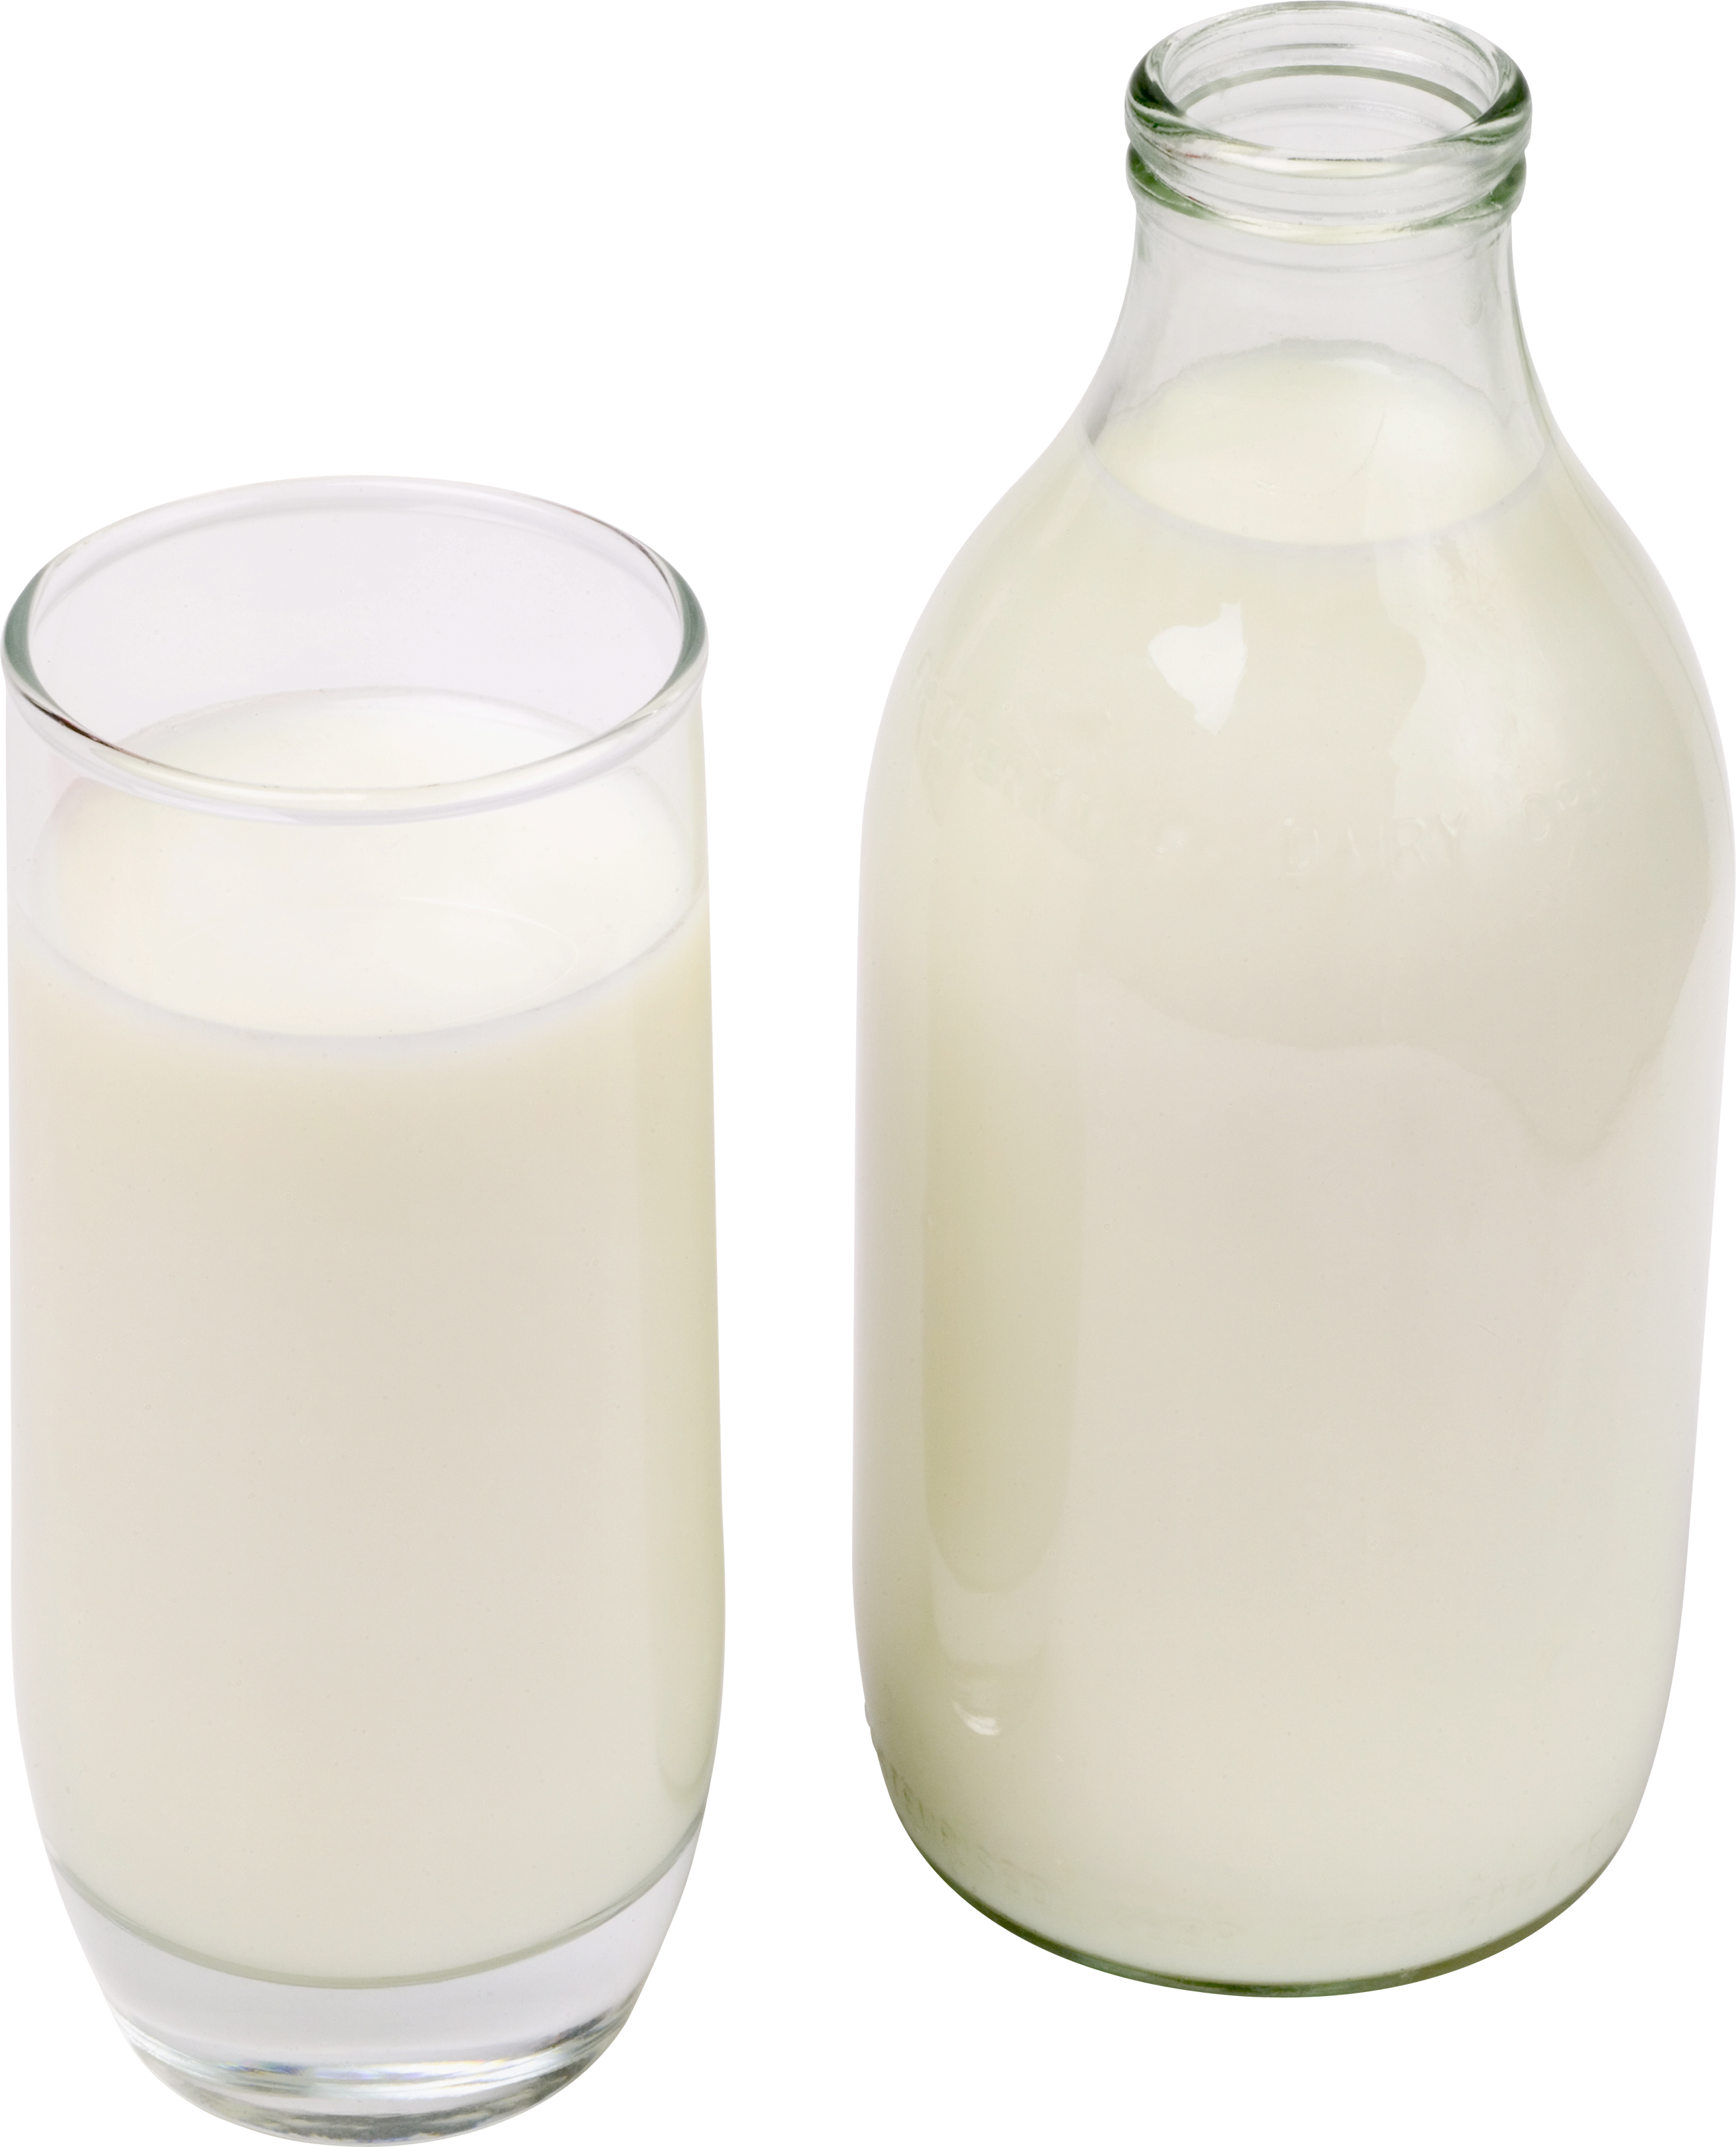 Кабардинское молоко. Молоко. Бутылка молока. Молоко на белом фоне. Молоко на прозрачном фоне.